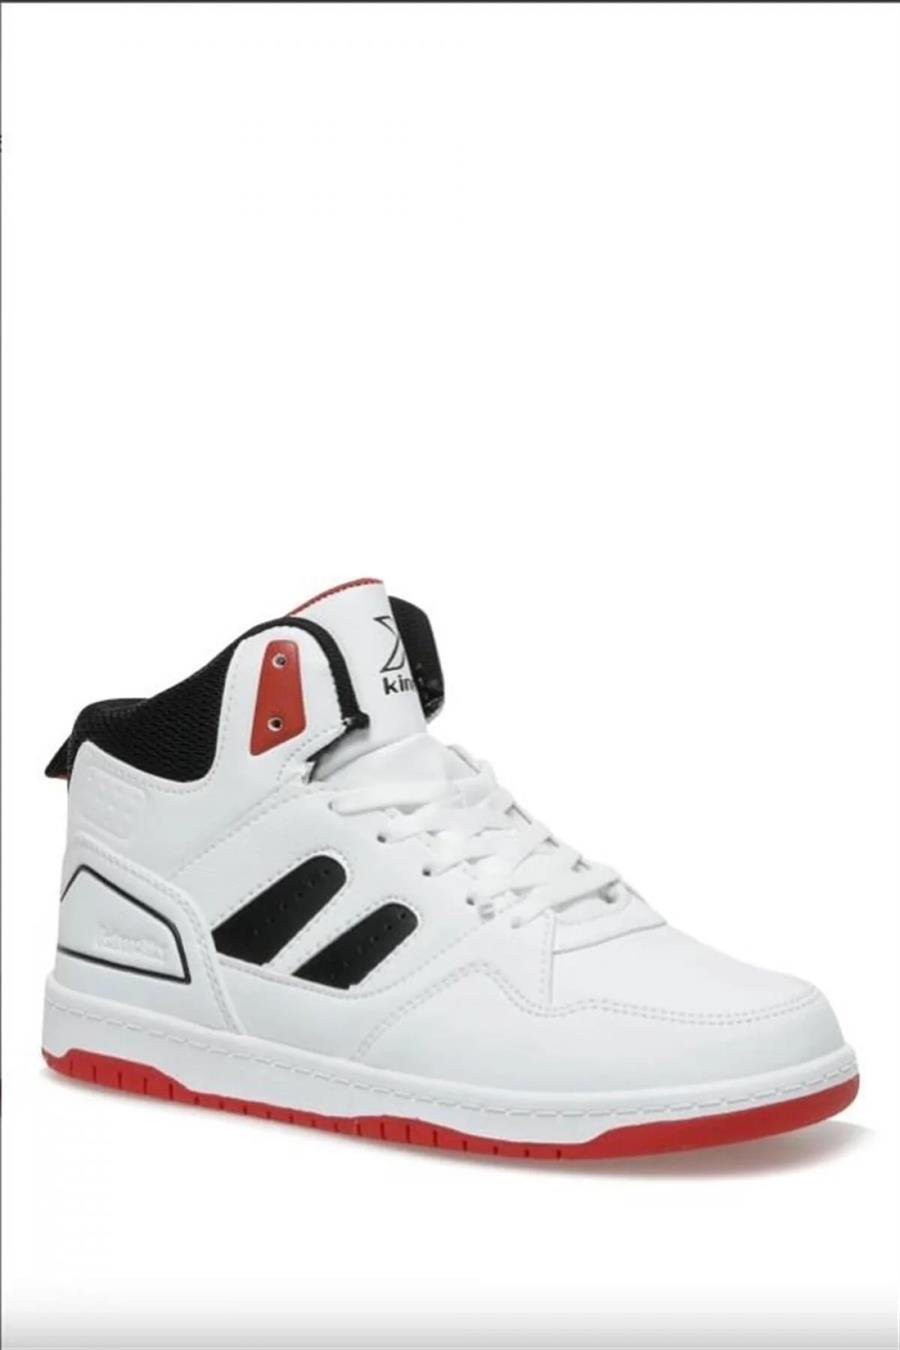 Kinetix Gina Pu 3Fx Beyaz Siyah Açık Kırmızı Sneaker Ayakkabı